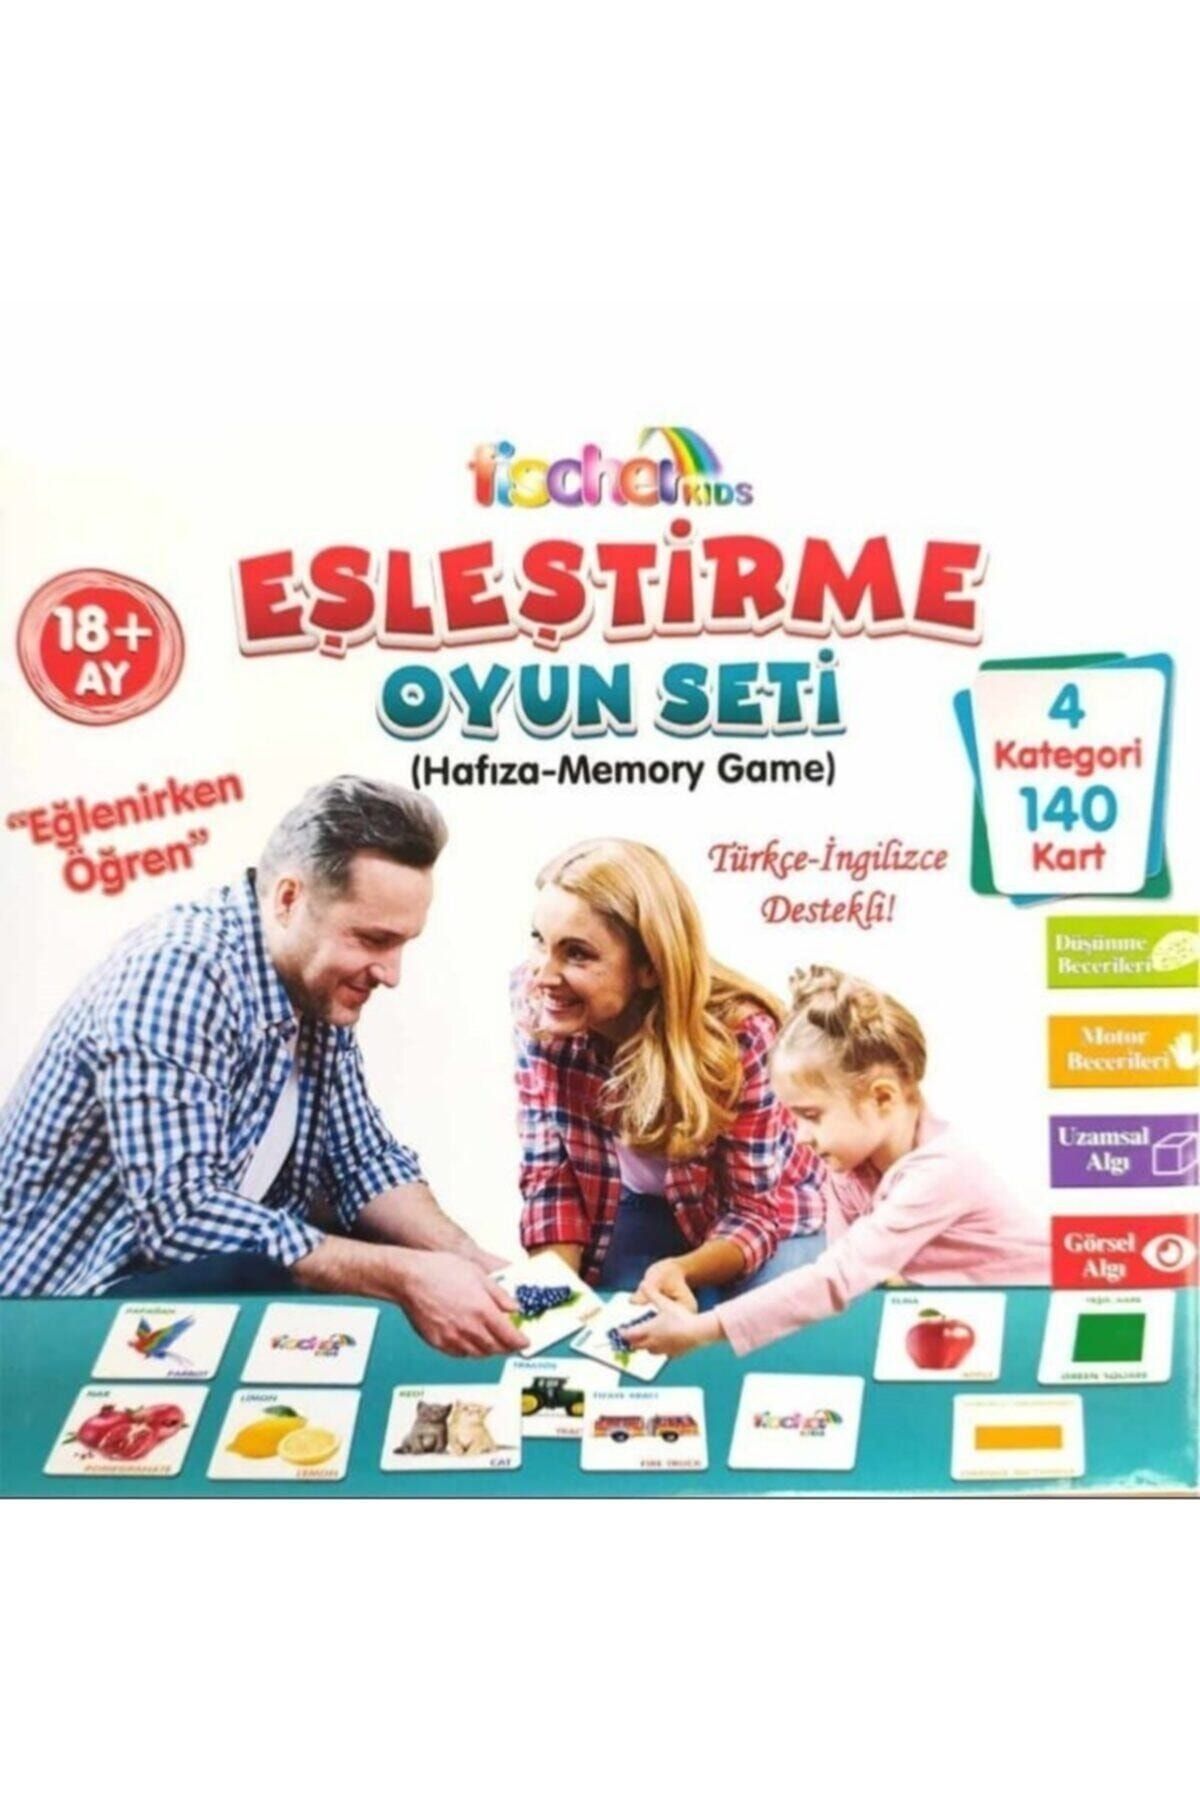 İstocToptan Er100 Eşleştirme Oyun Seti Türkçe Ingilizce Fischer Kids, 4 Kategori 140 Kart